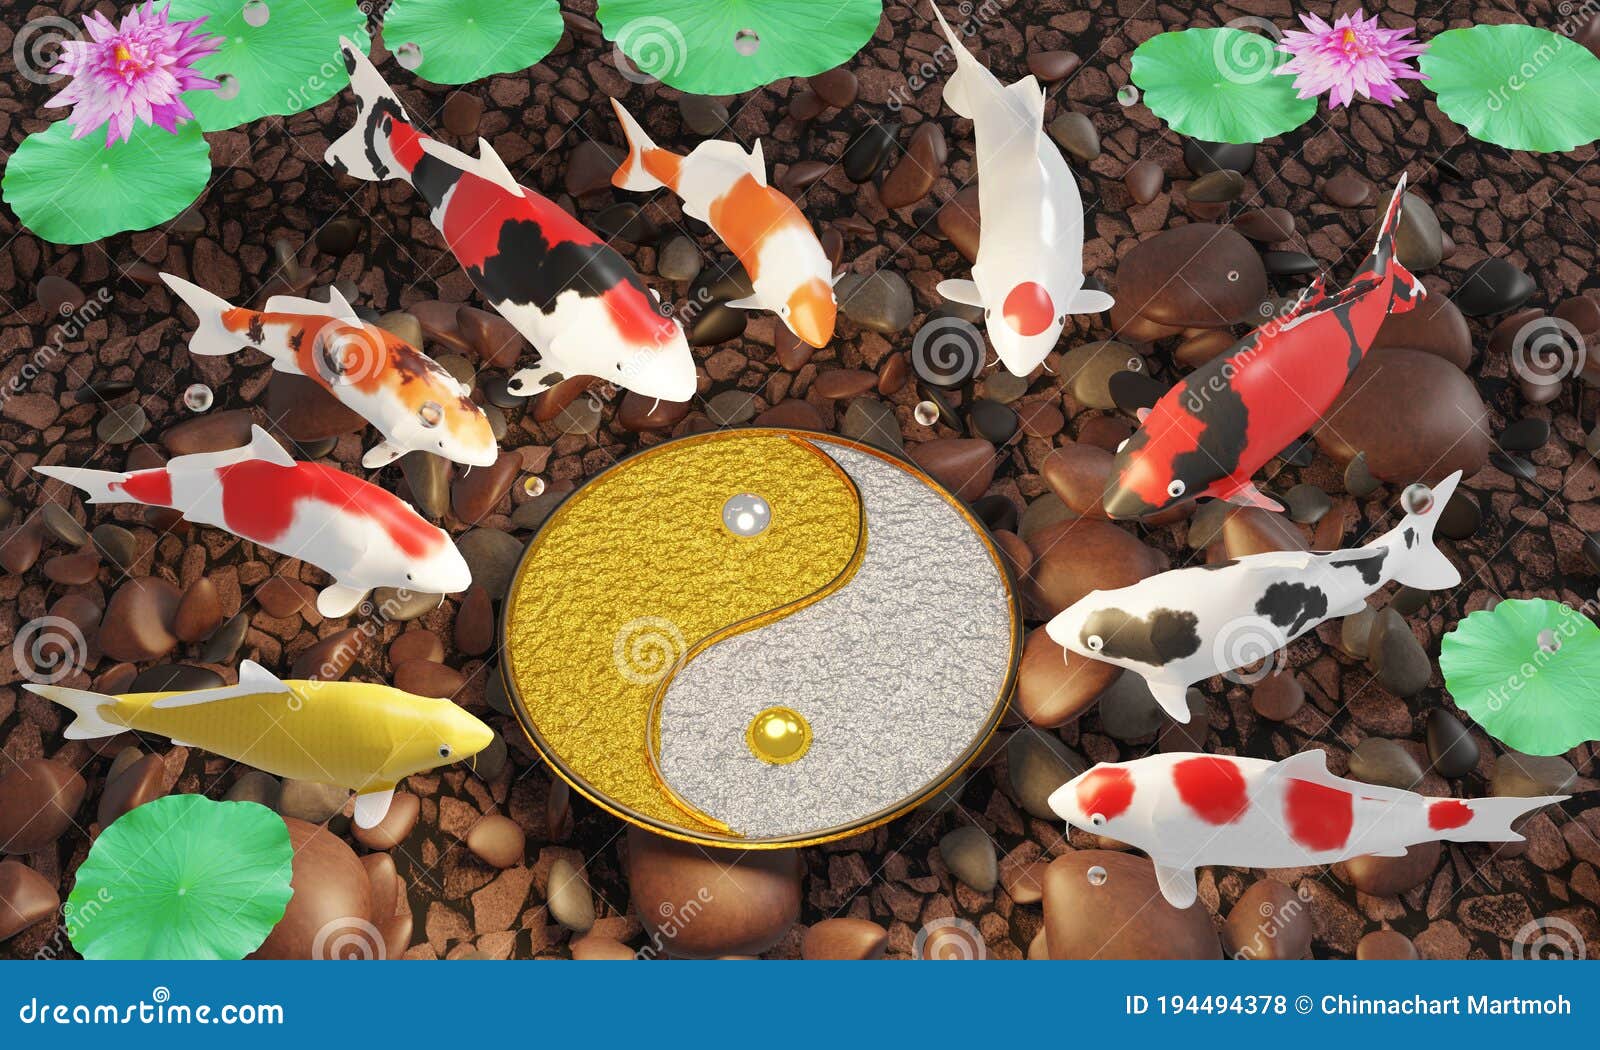 Hình ảnh về Yin và Yang Koi Circle sẽ mang đến cho bạn một cảm giác hài hòa và đầy tính tâm linh. Yin và Yang được thể hiện qua những con cá Koi với màu sắc tương phản nhau. Hãy đắm mình trong hình ảnh và cảm nhận trọn vẹn ý nghĩa của chúng.